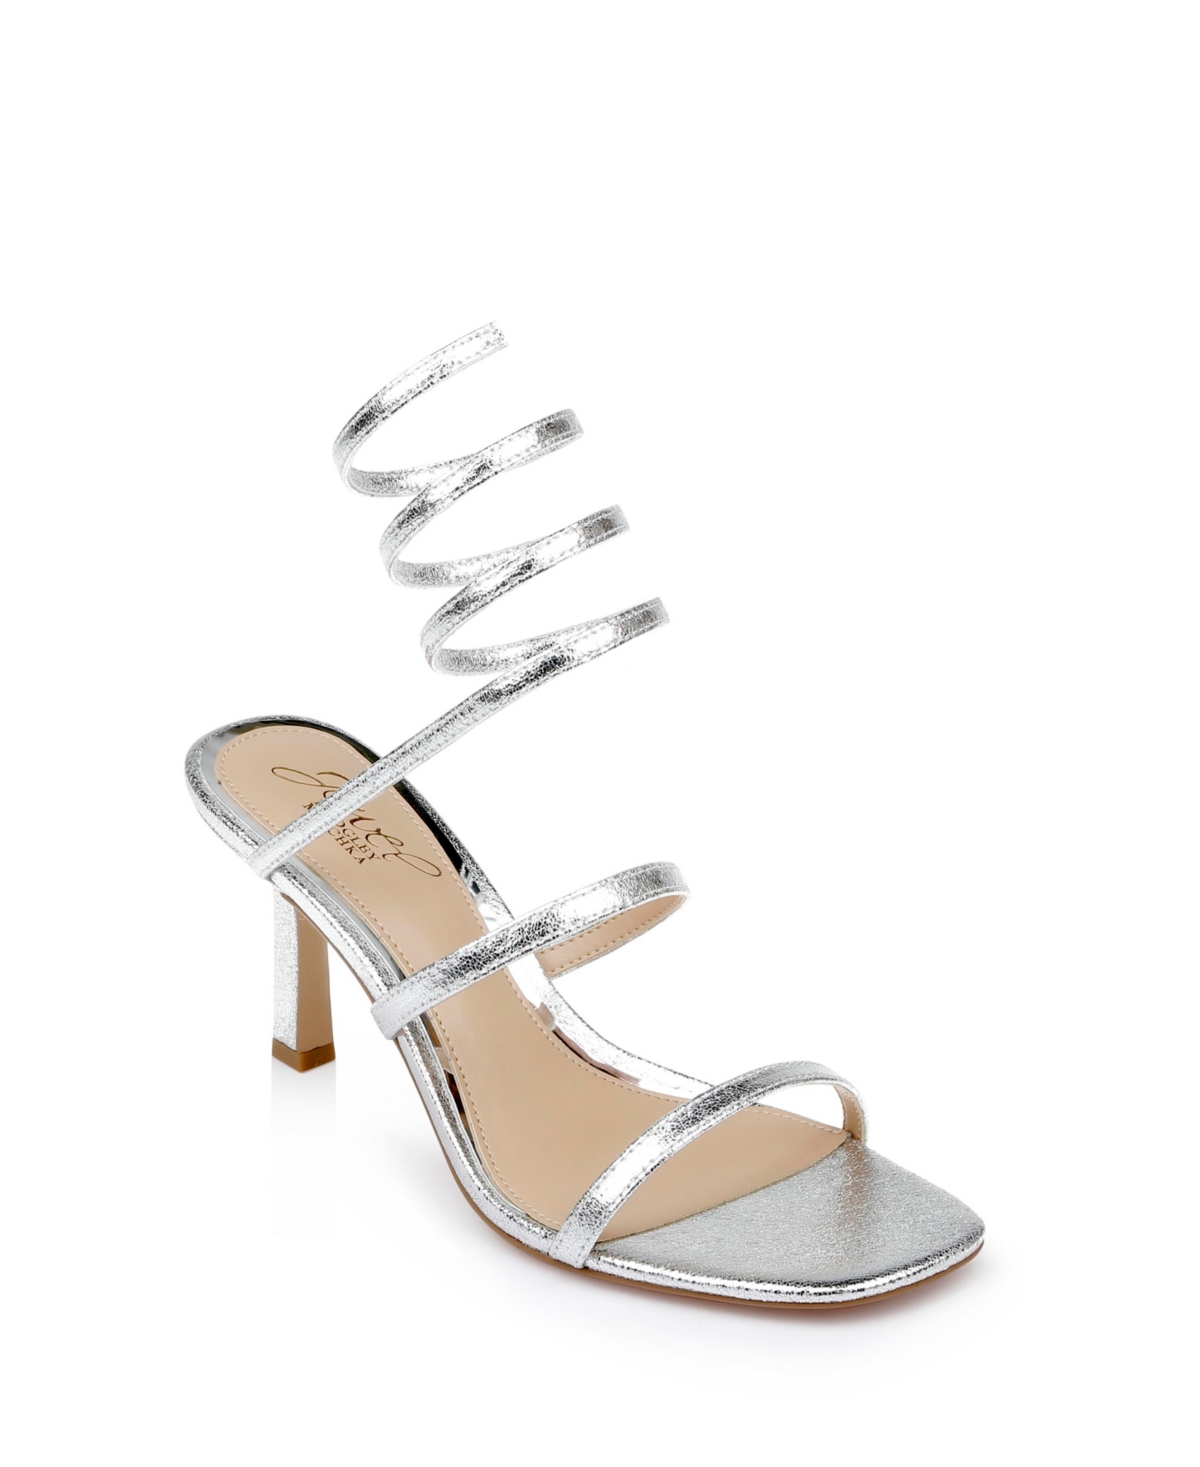 Jewel Badgley Mischka Women's Reina Ankle Wrap Evening Sandals In Silver Texture Metallic